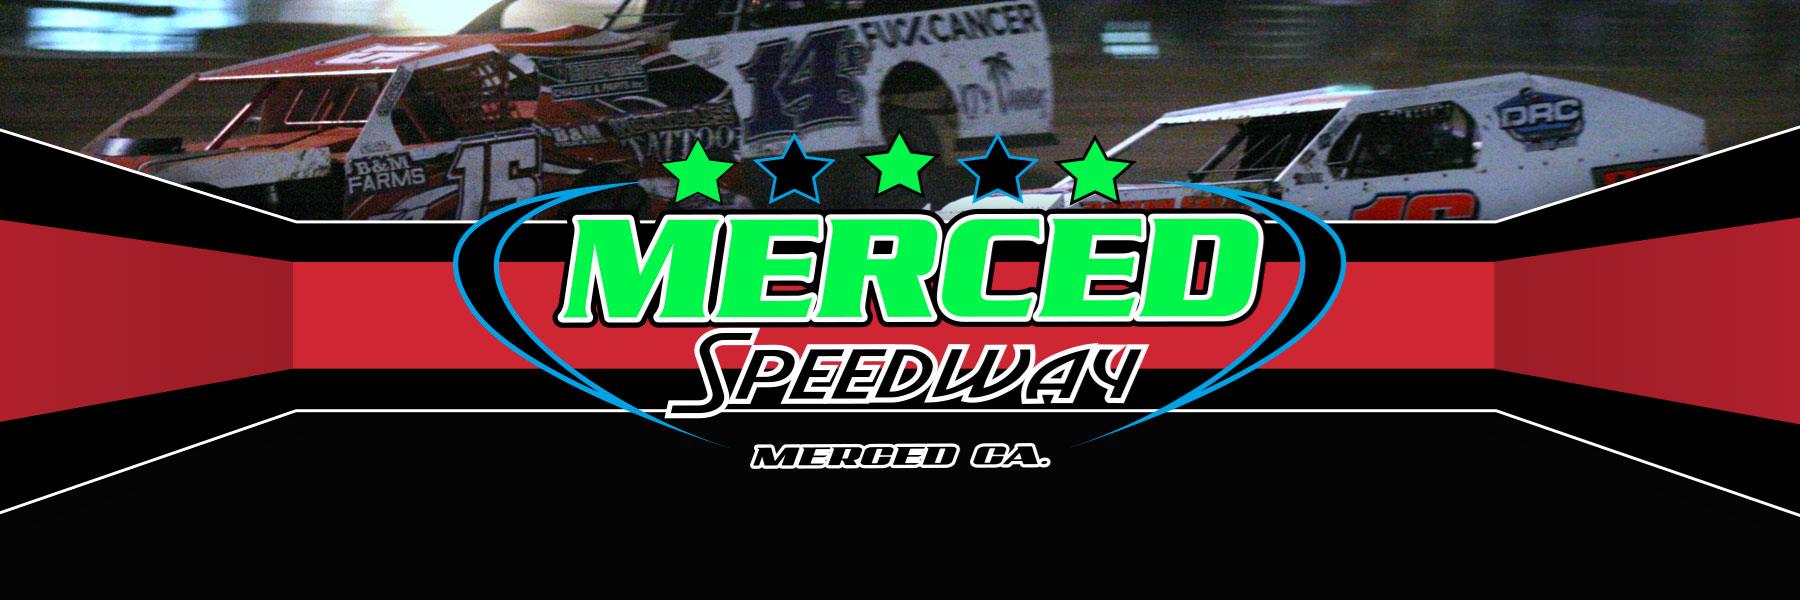 11/23/2021 - Merced Speedway